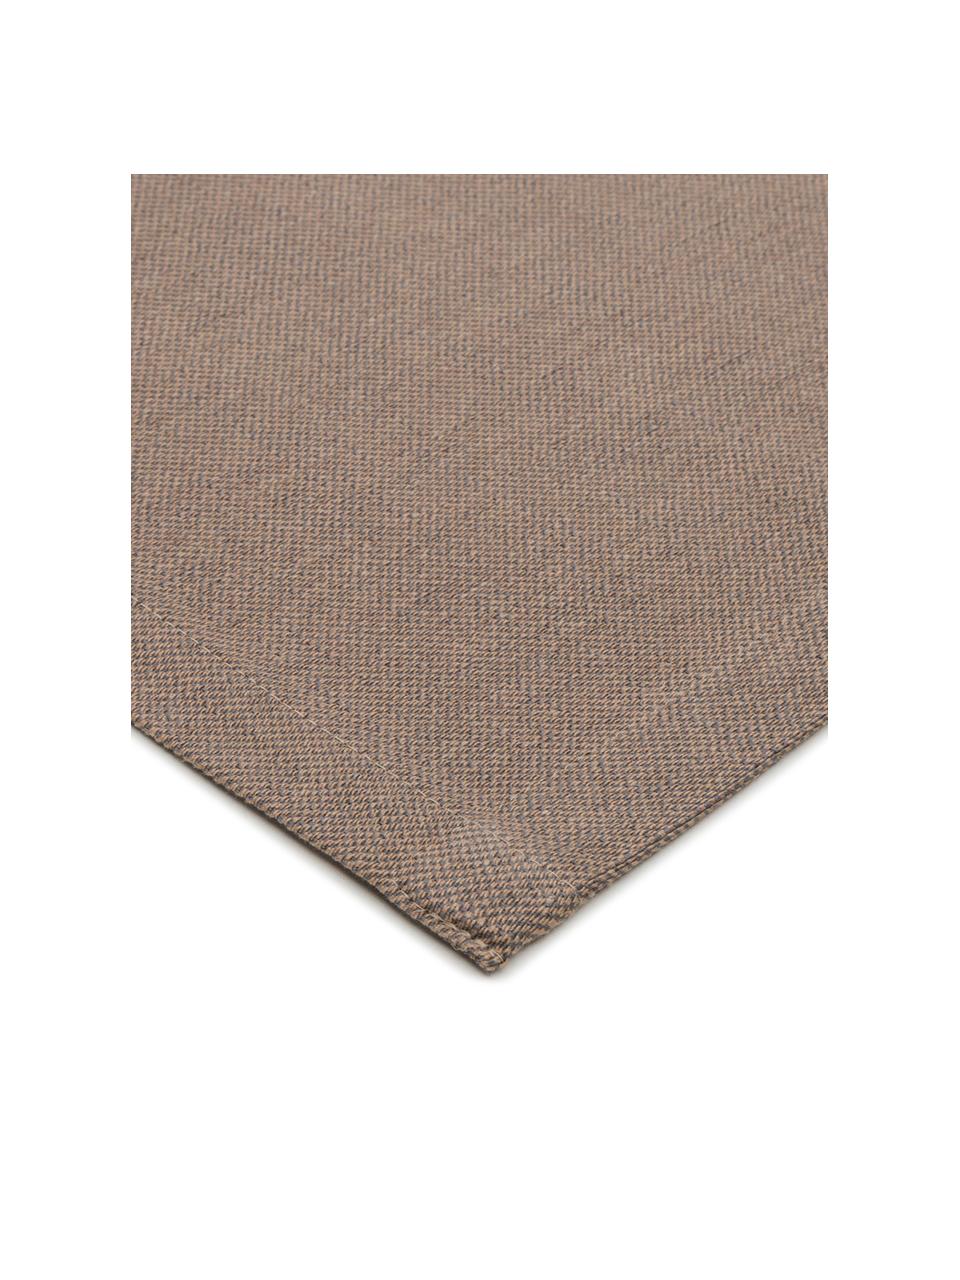 Tischläufer Riva aus Baumwollgemisch in Braun, 55% Baumwolle, 45% Polyester, Taupe, B 40 x L 150 cm